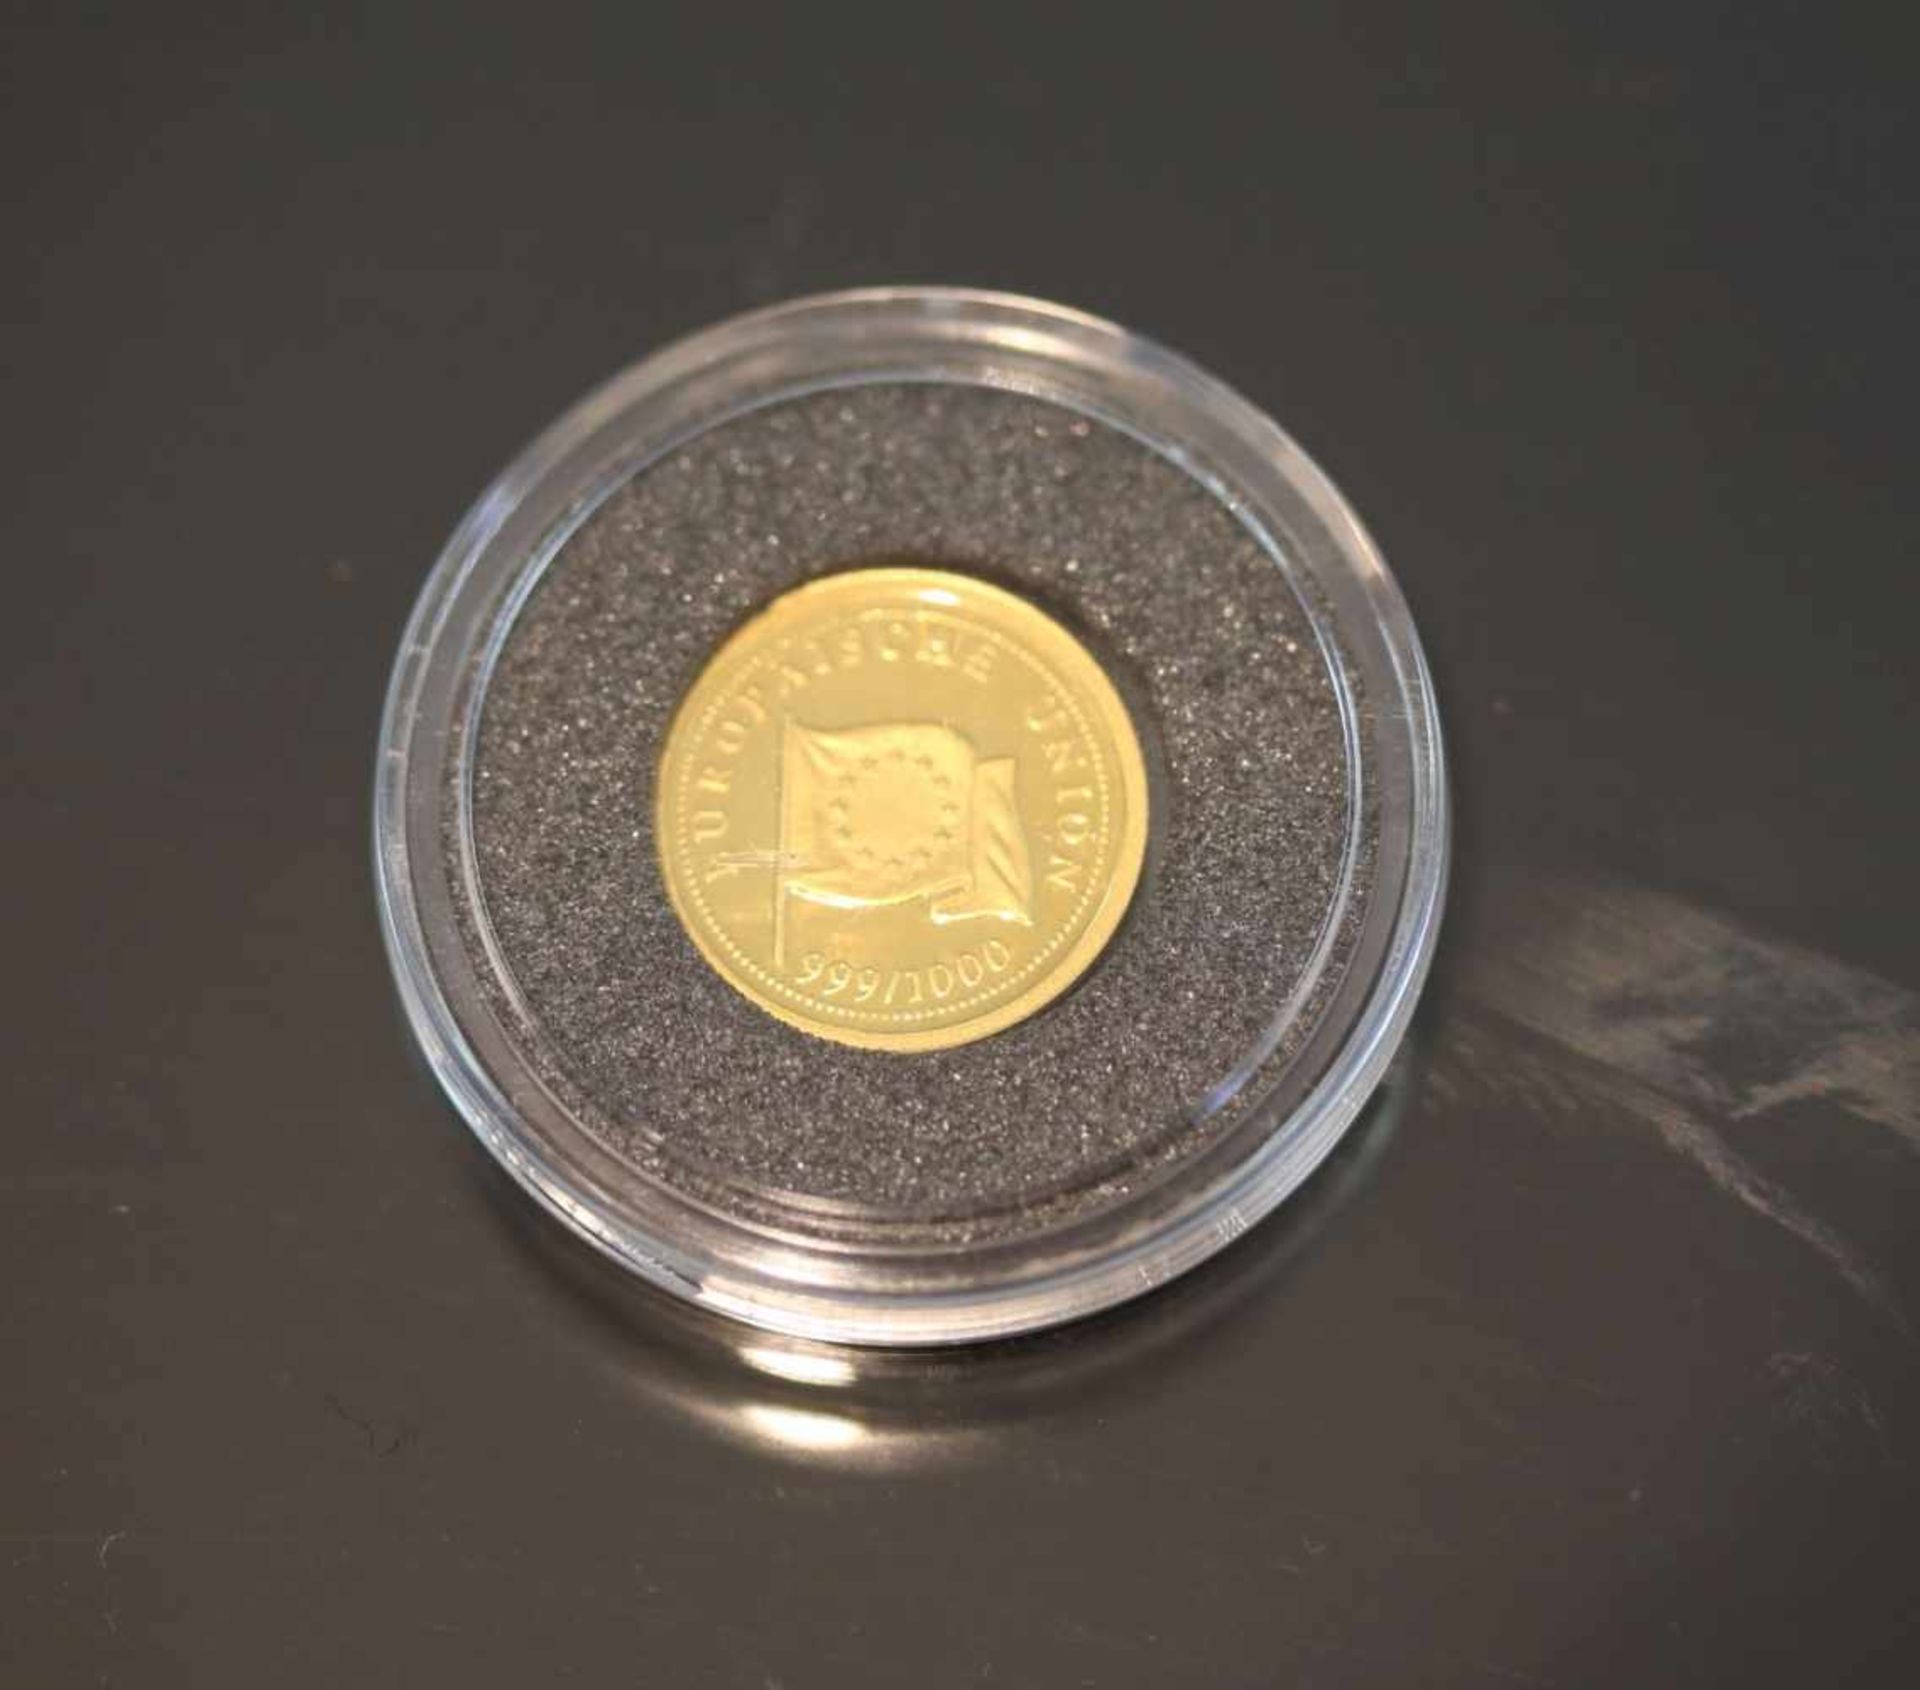 1 GoldmedailleMaterial: 999 GoldGewicht: 1,3 Gramm Europäische Union- - -25.00 % buyer's premium